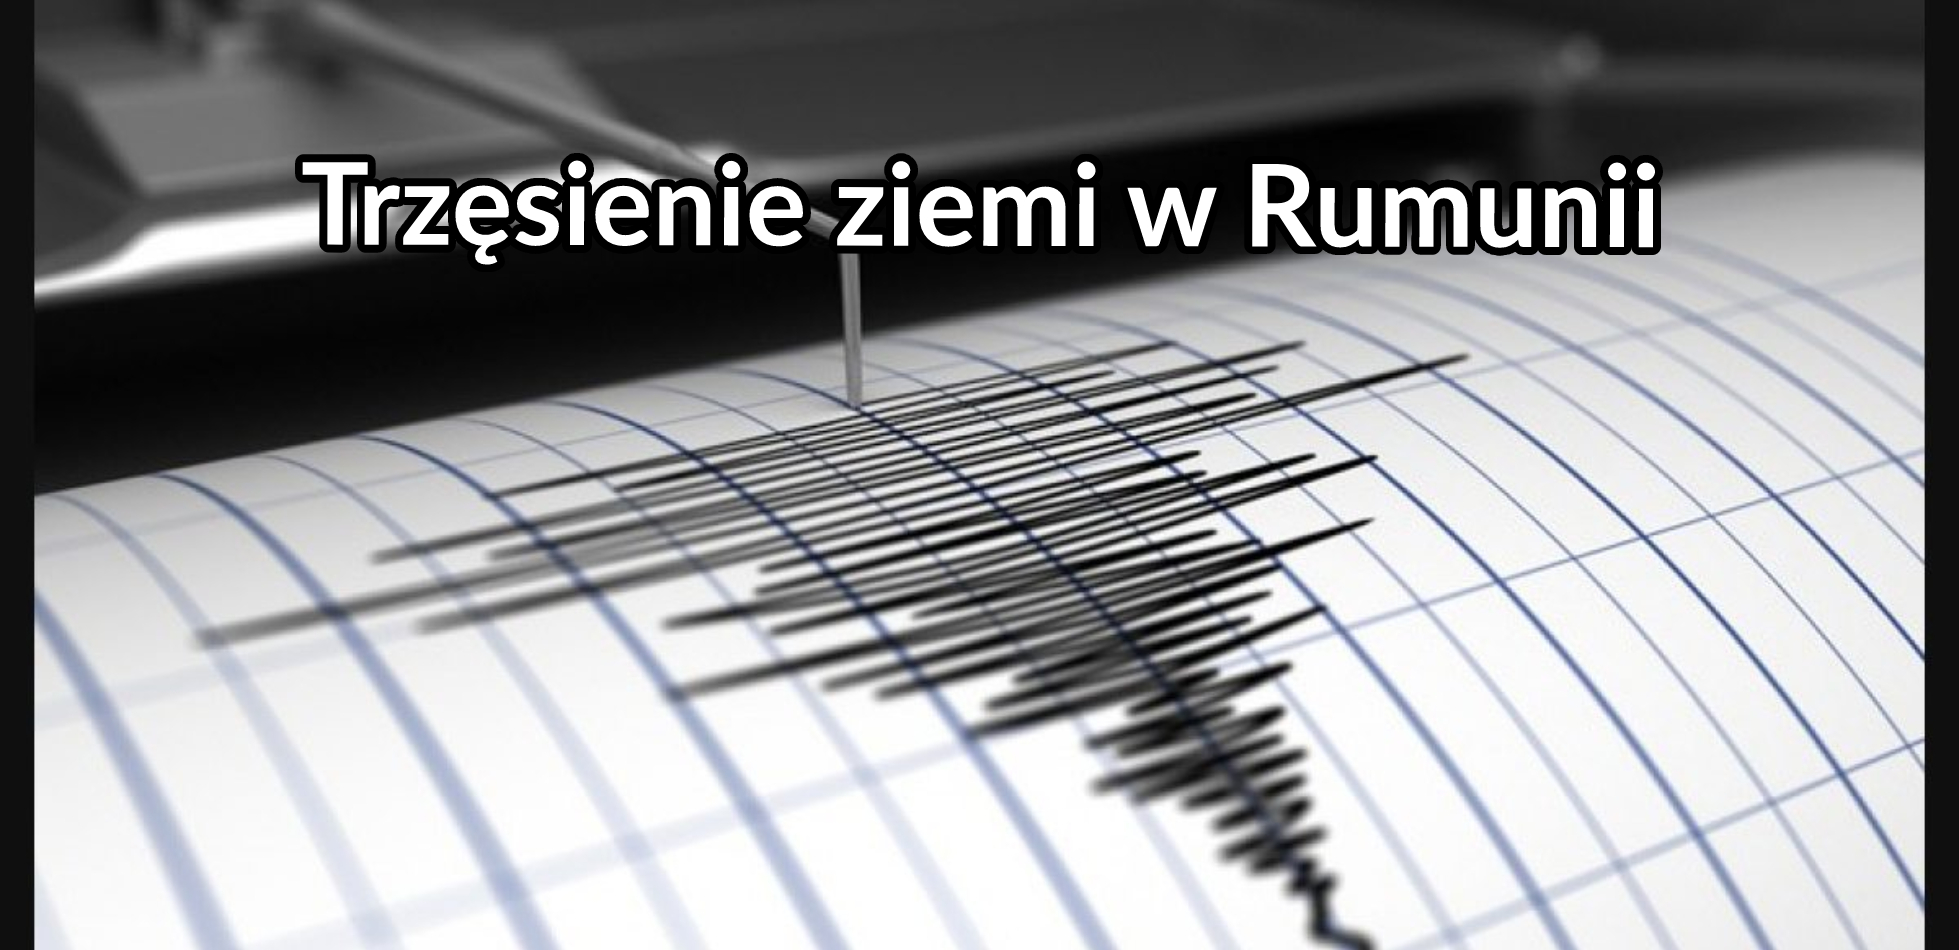 Rumunia trzęsienie ziemi